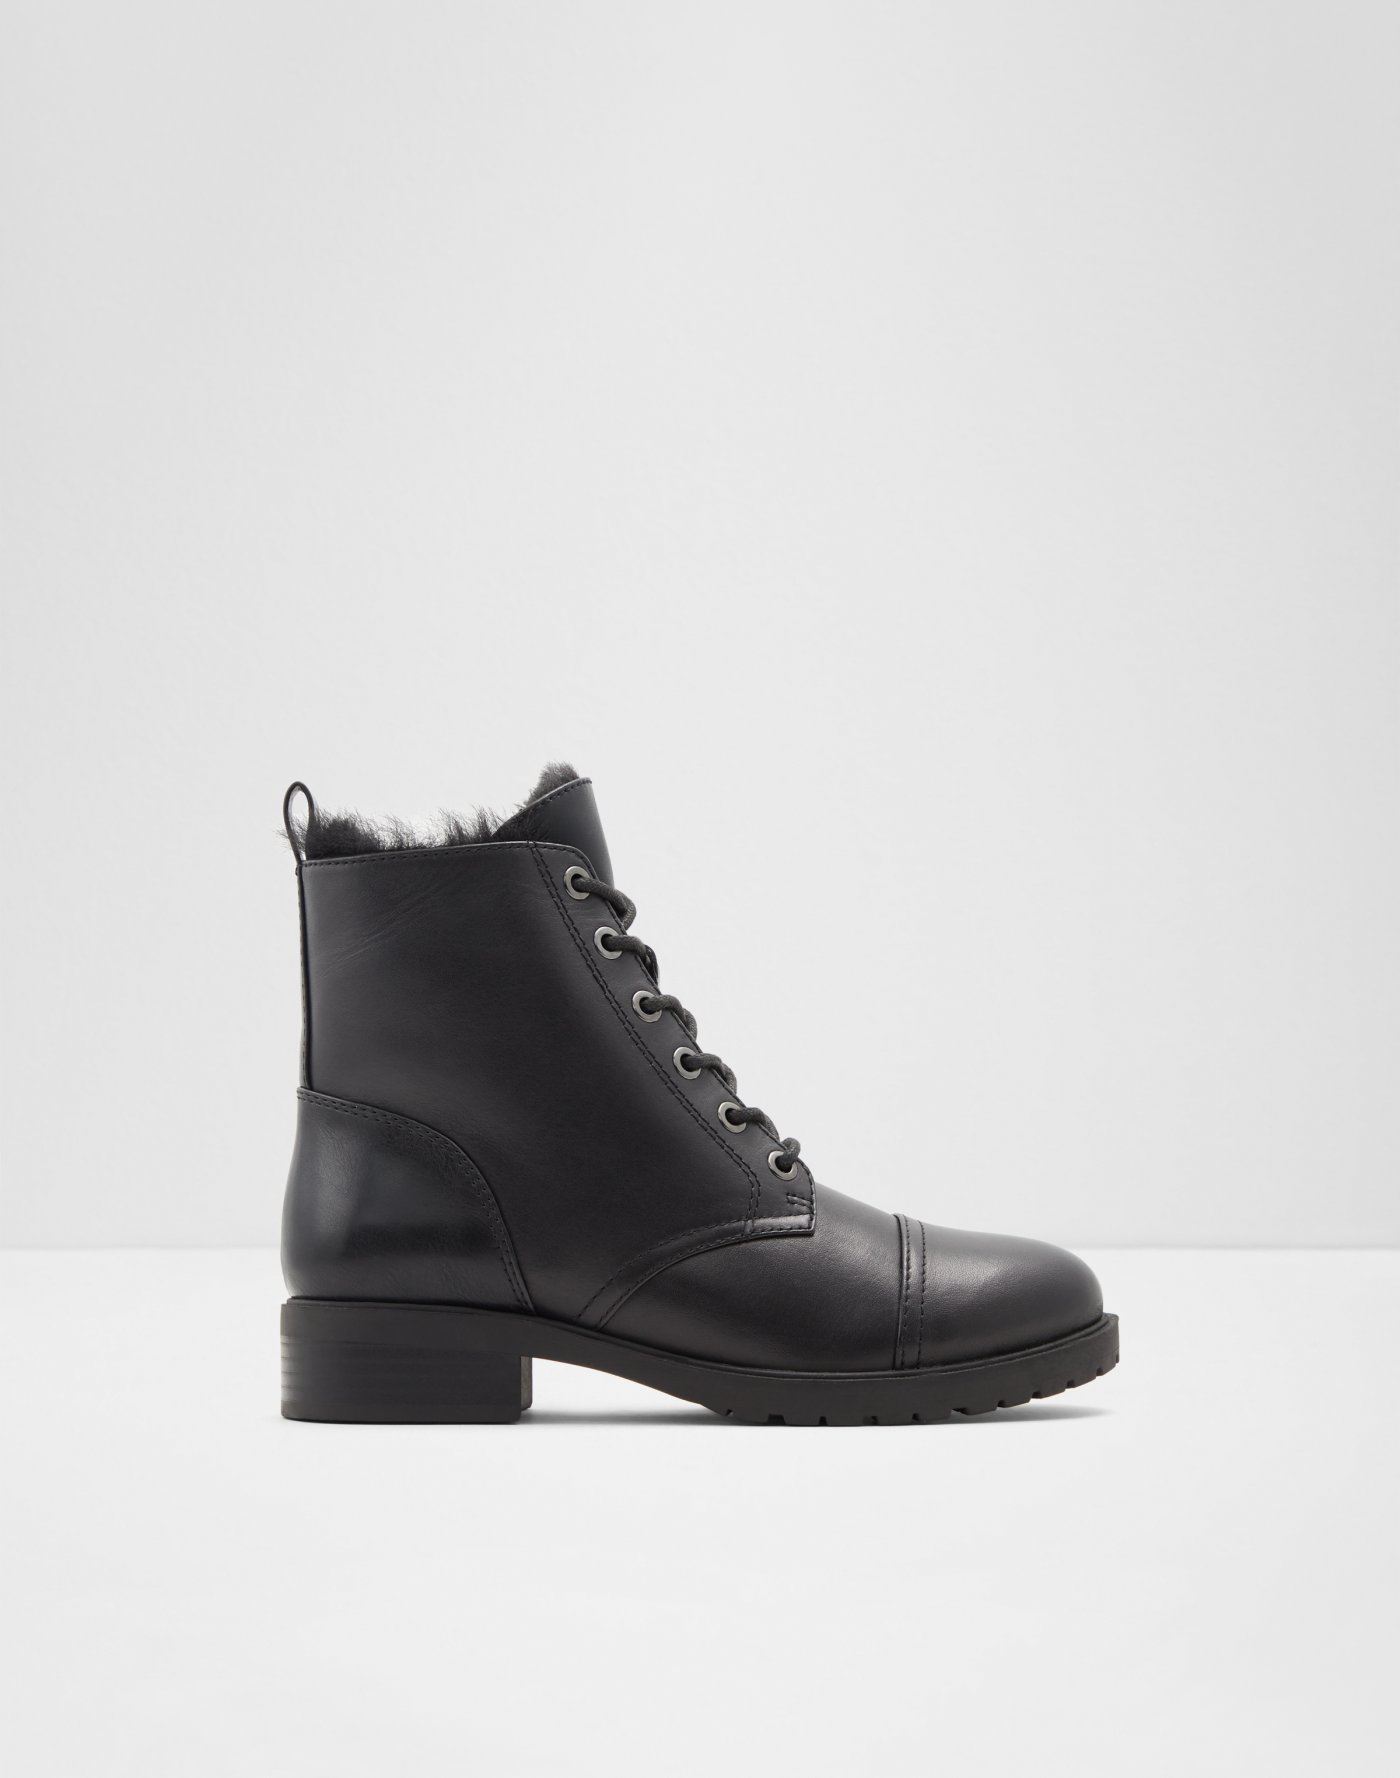 Sale: Boots, Shoes \u0026 Sandals | ALDO Canada